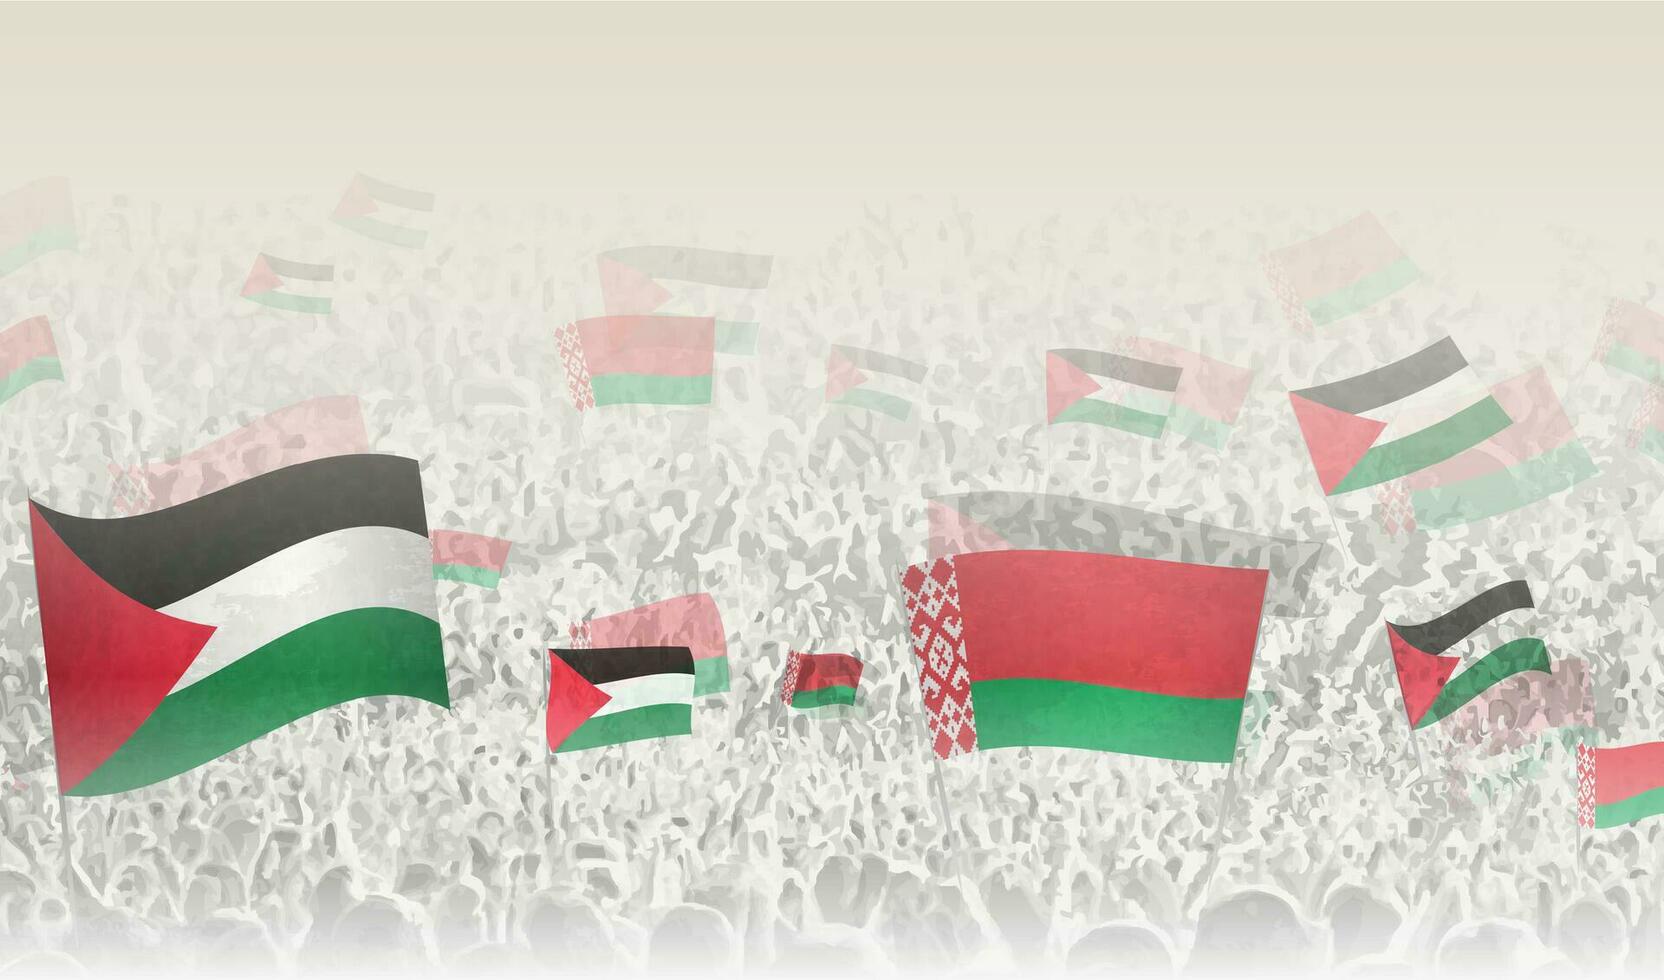 Palestina y bielorrusia banderas en un multitud de aplausos gente. vector